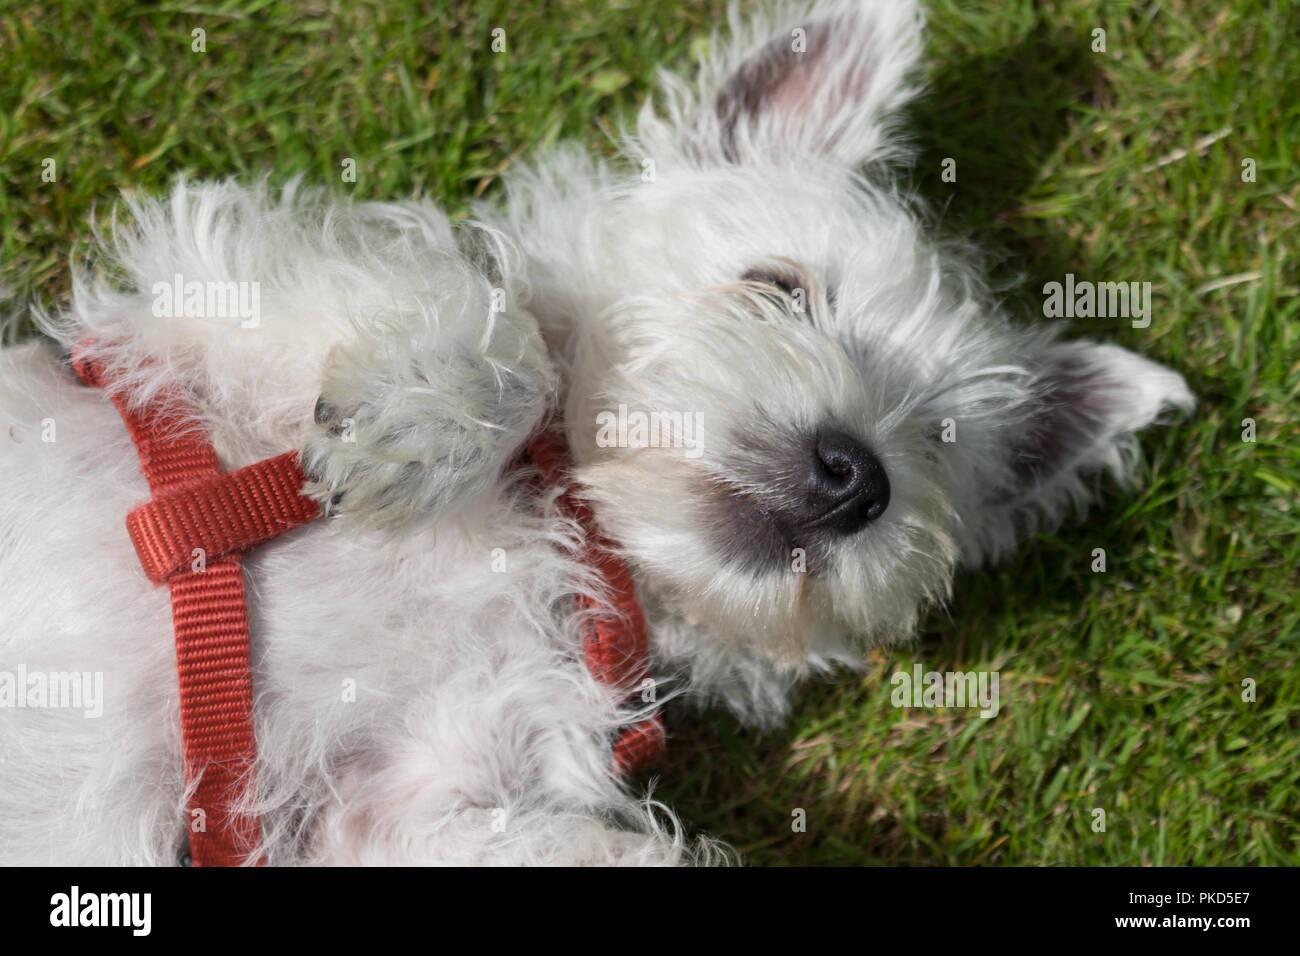 West Highland White Terrier, communément appelé Westie. Allongé sur le dos dans l'herbe avec un faisceau rouge. Banque D'Images